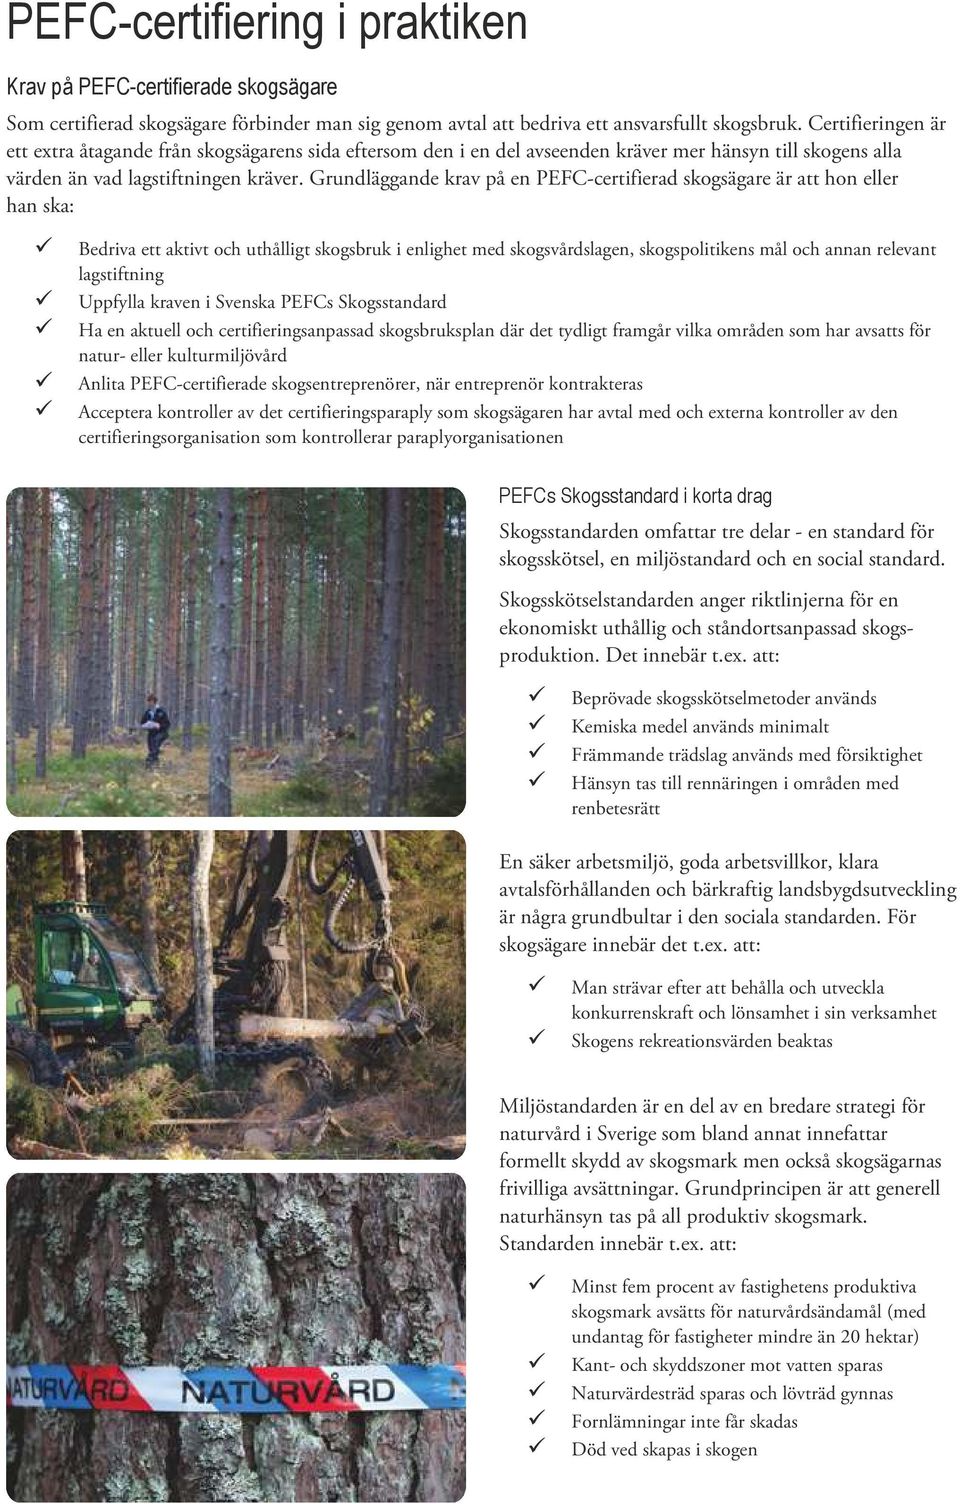 Grundläggande krav på en PEFC-certifierad skogsägare är att hon eller han ska: ü Bedriva ett aktivt och uthålligt skogsbruk i enlighet med skogsvårdslagen, skogspolitikens mål och annan relevant